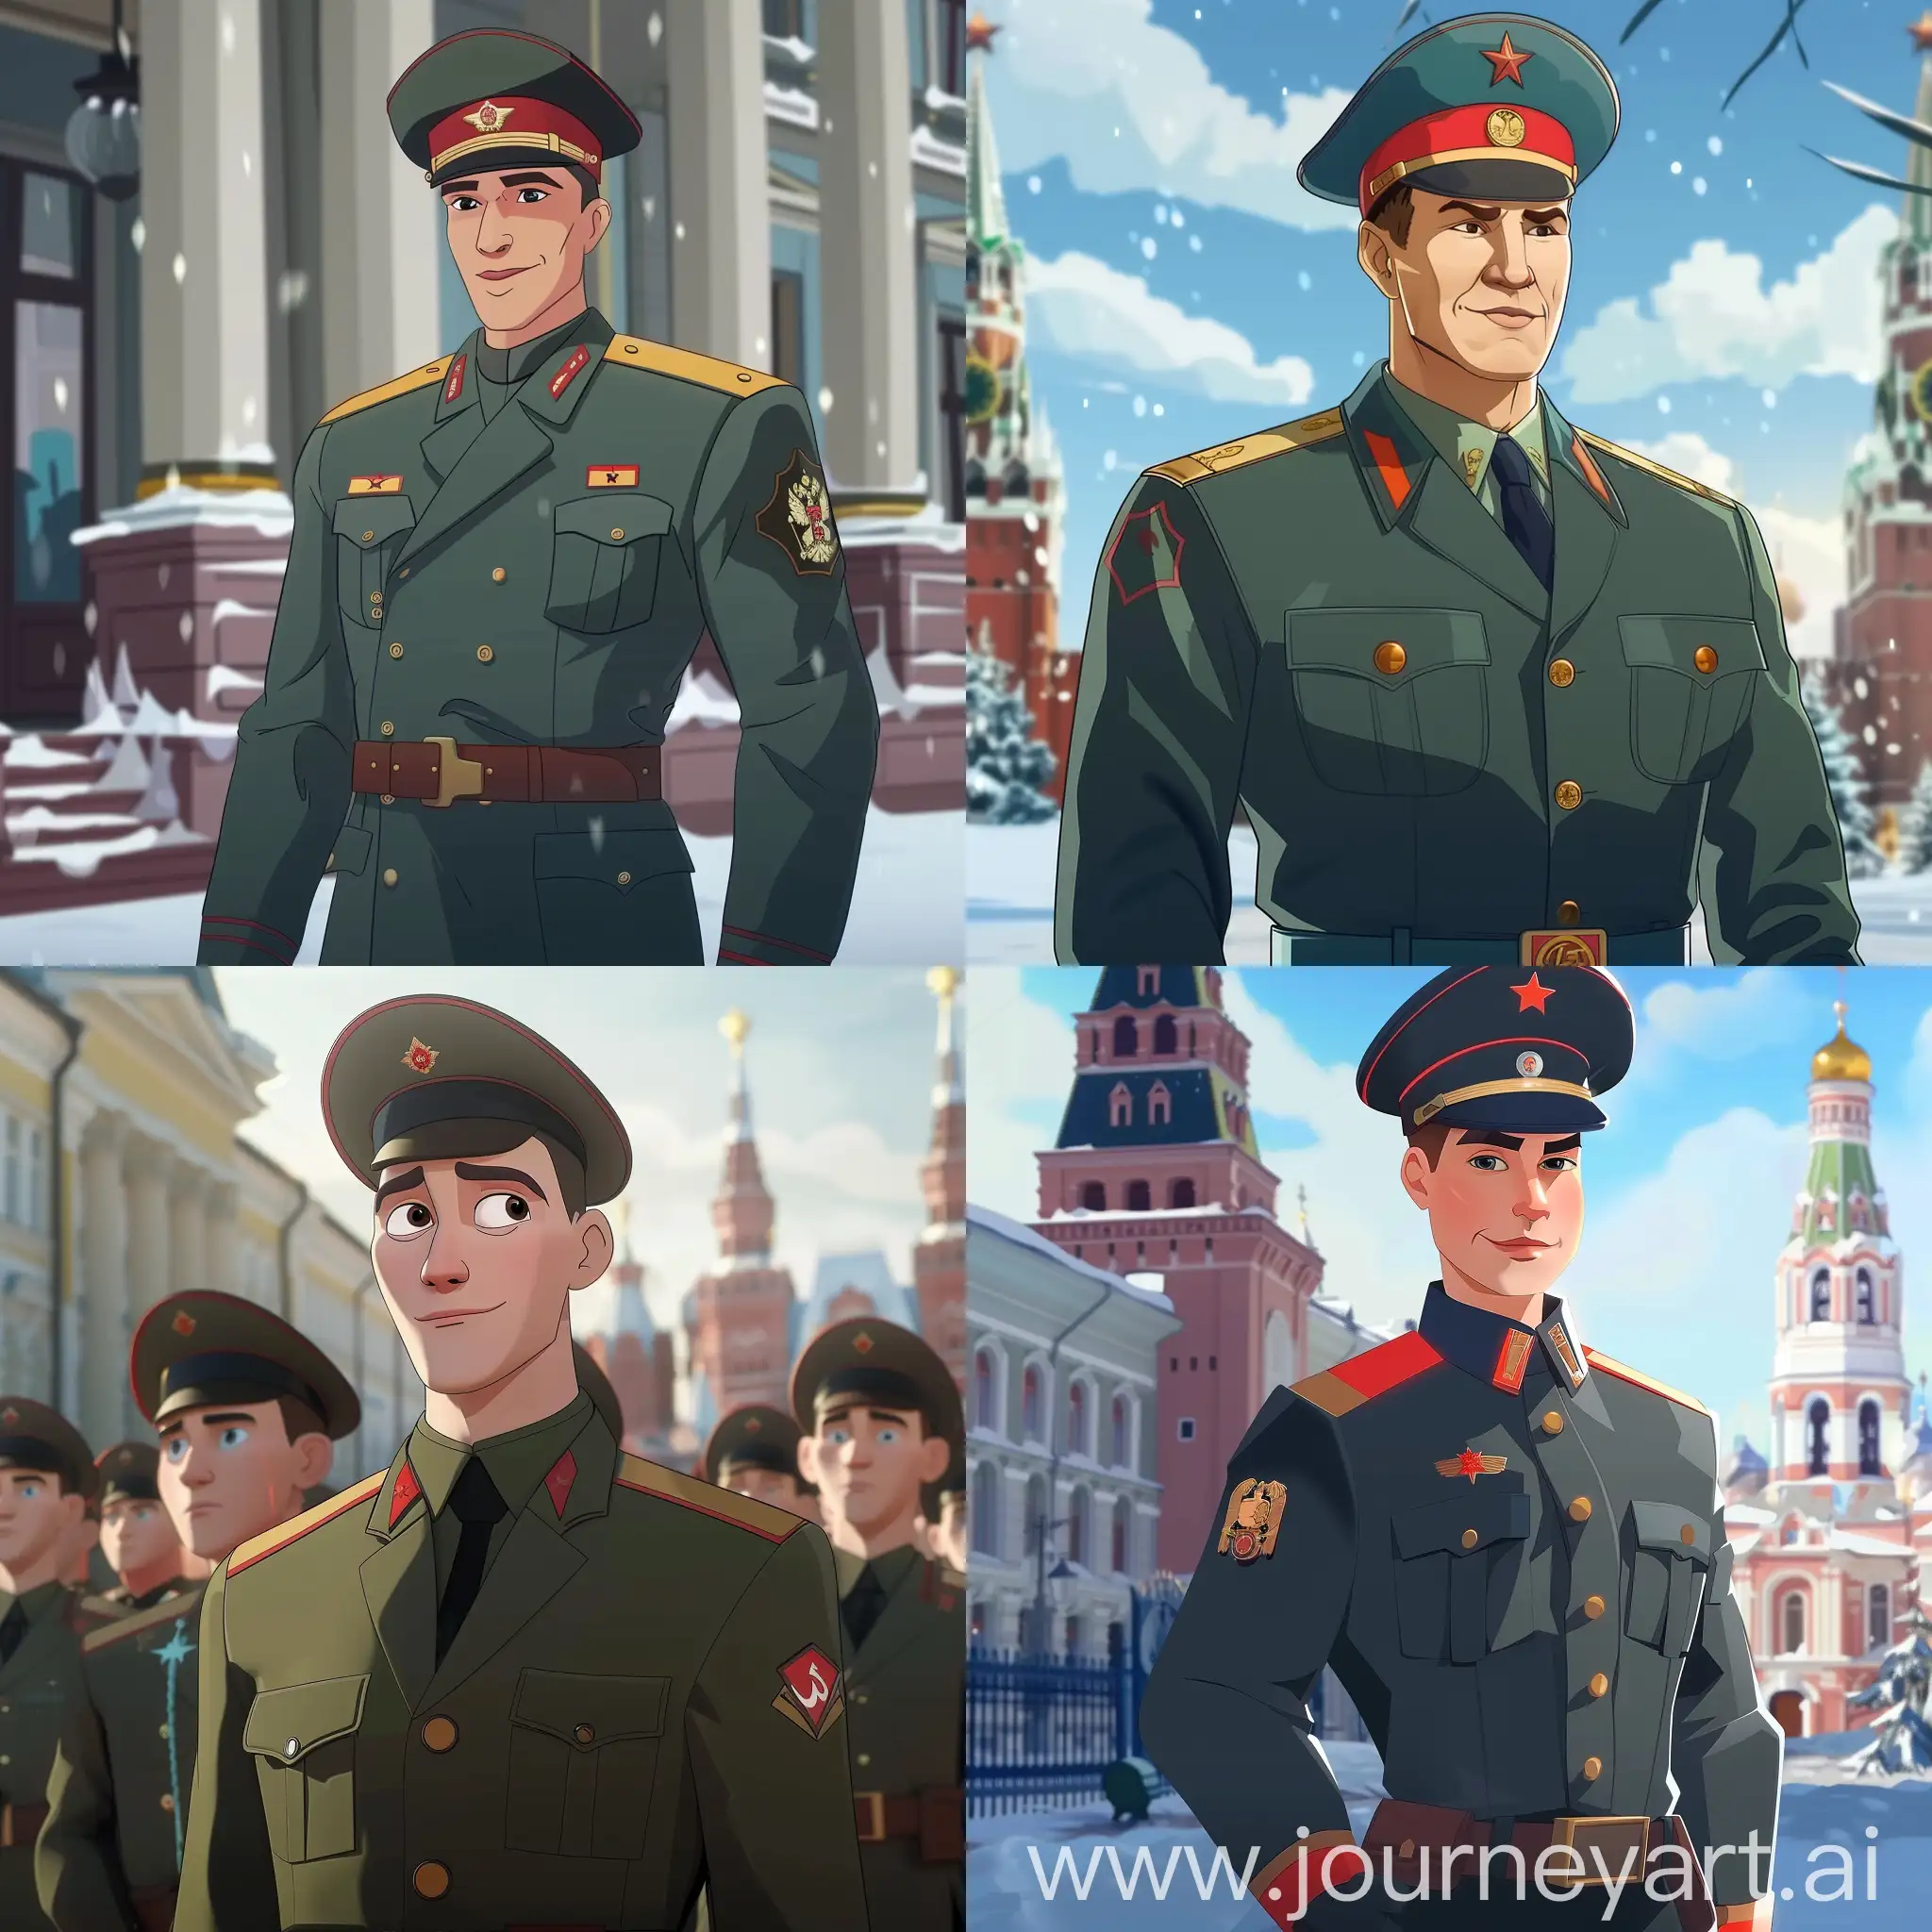 поздравление с днём защитника отечества, 23 февраля в России, солдаты в форме, в стиле мультипликации